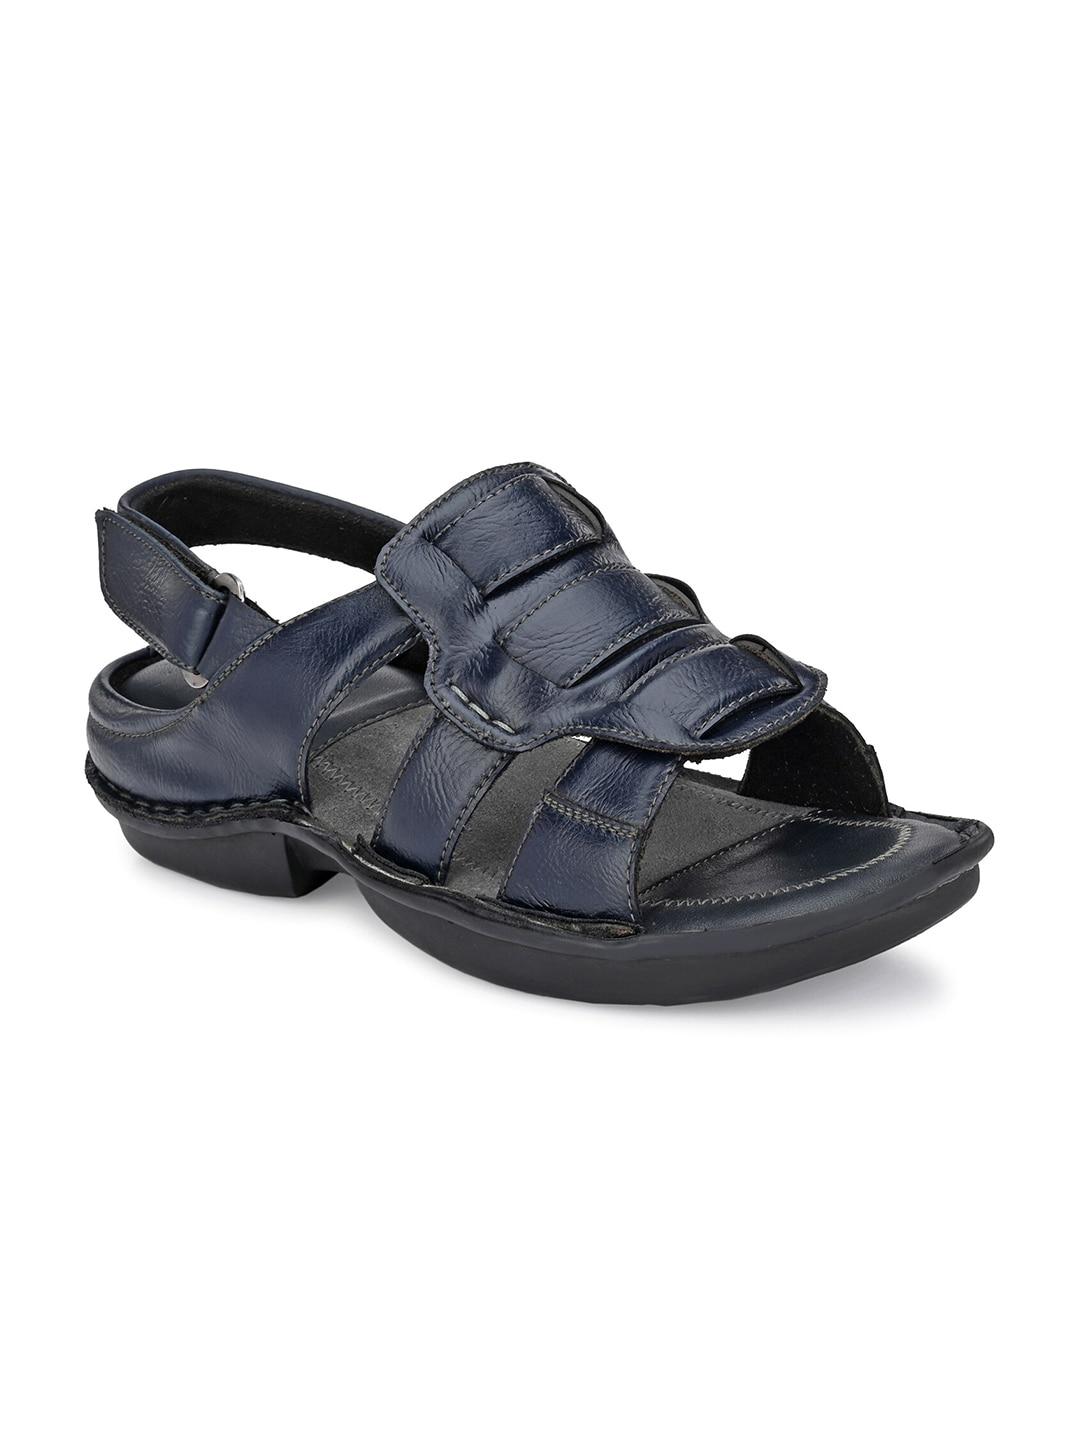 softio men blue comfort sandals